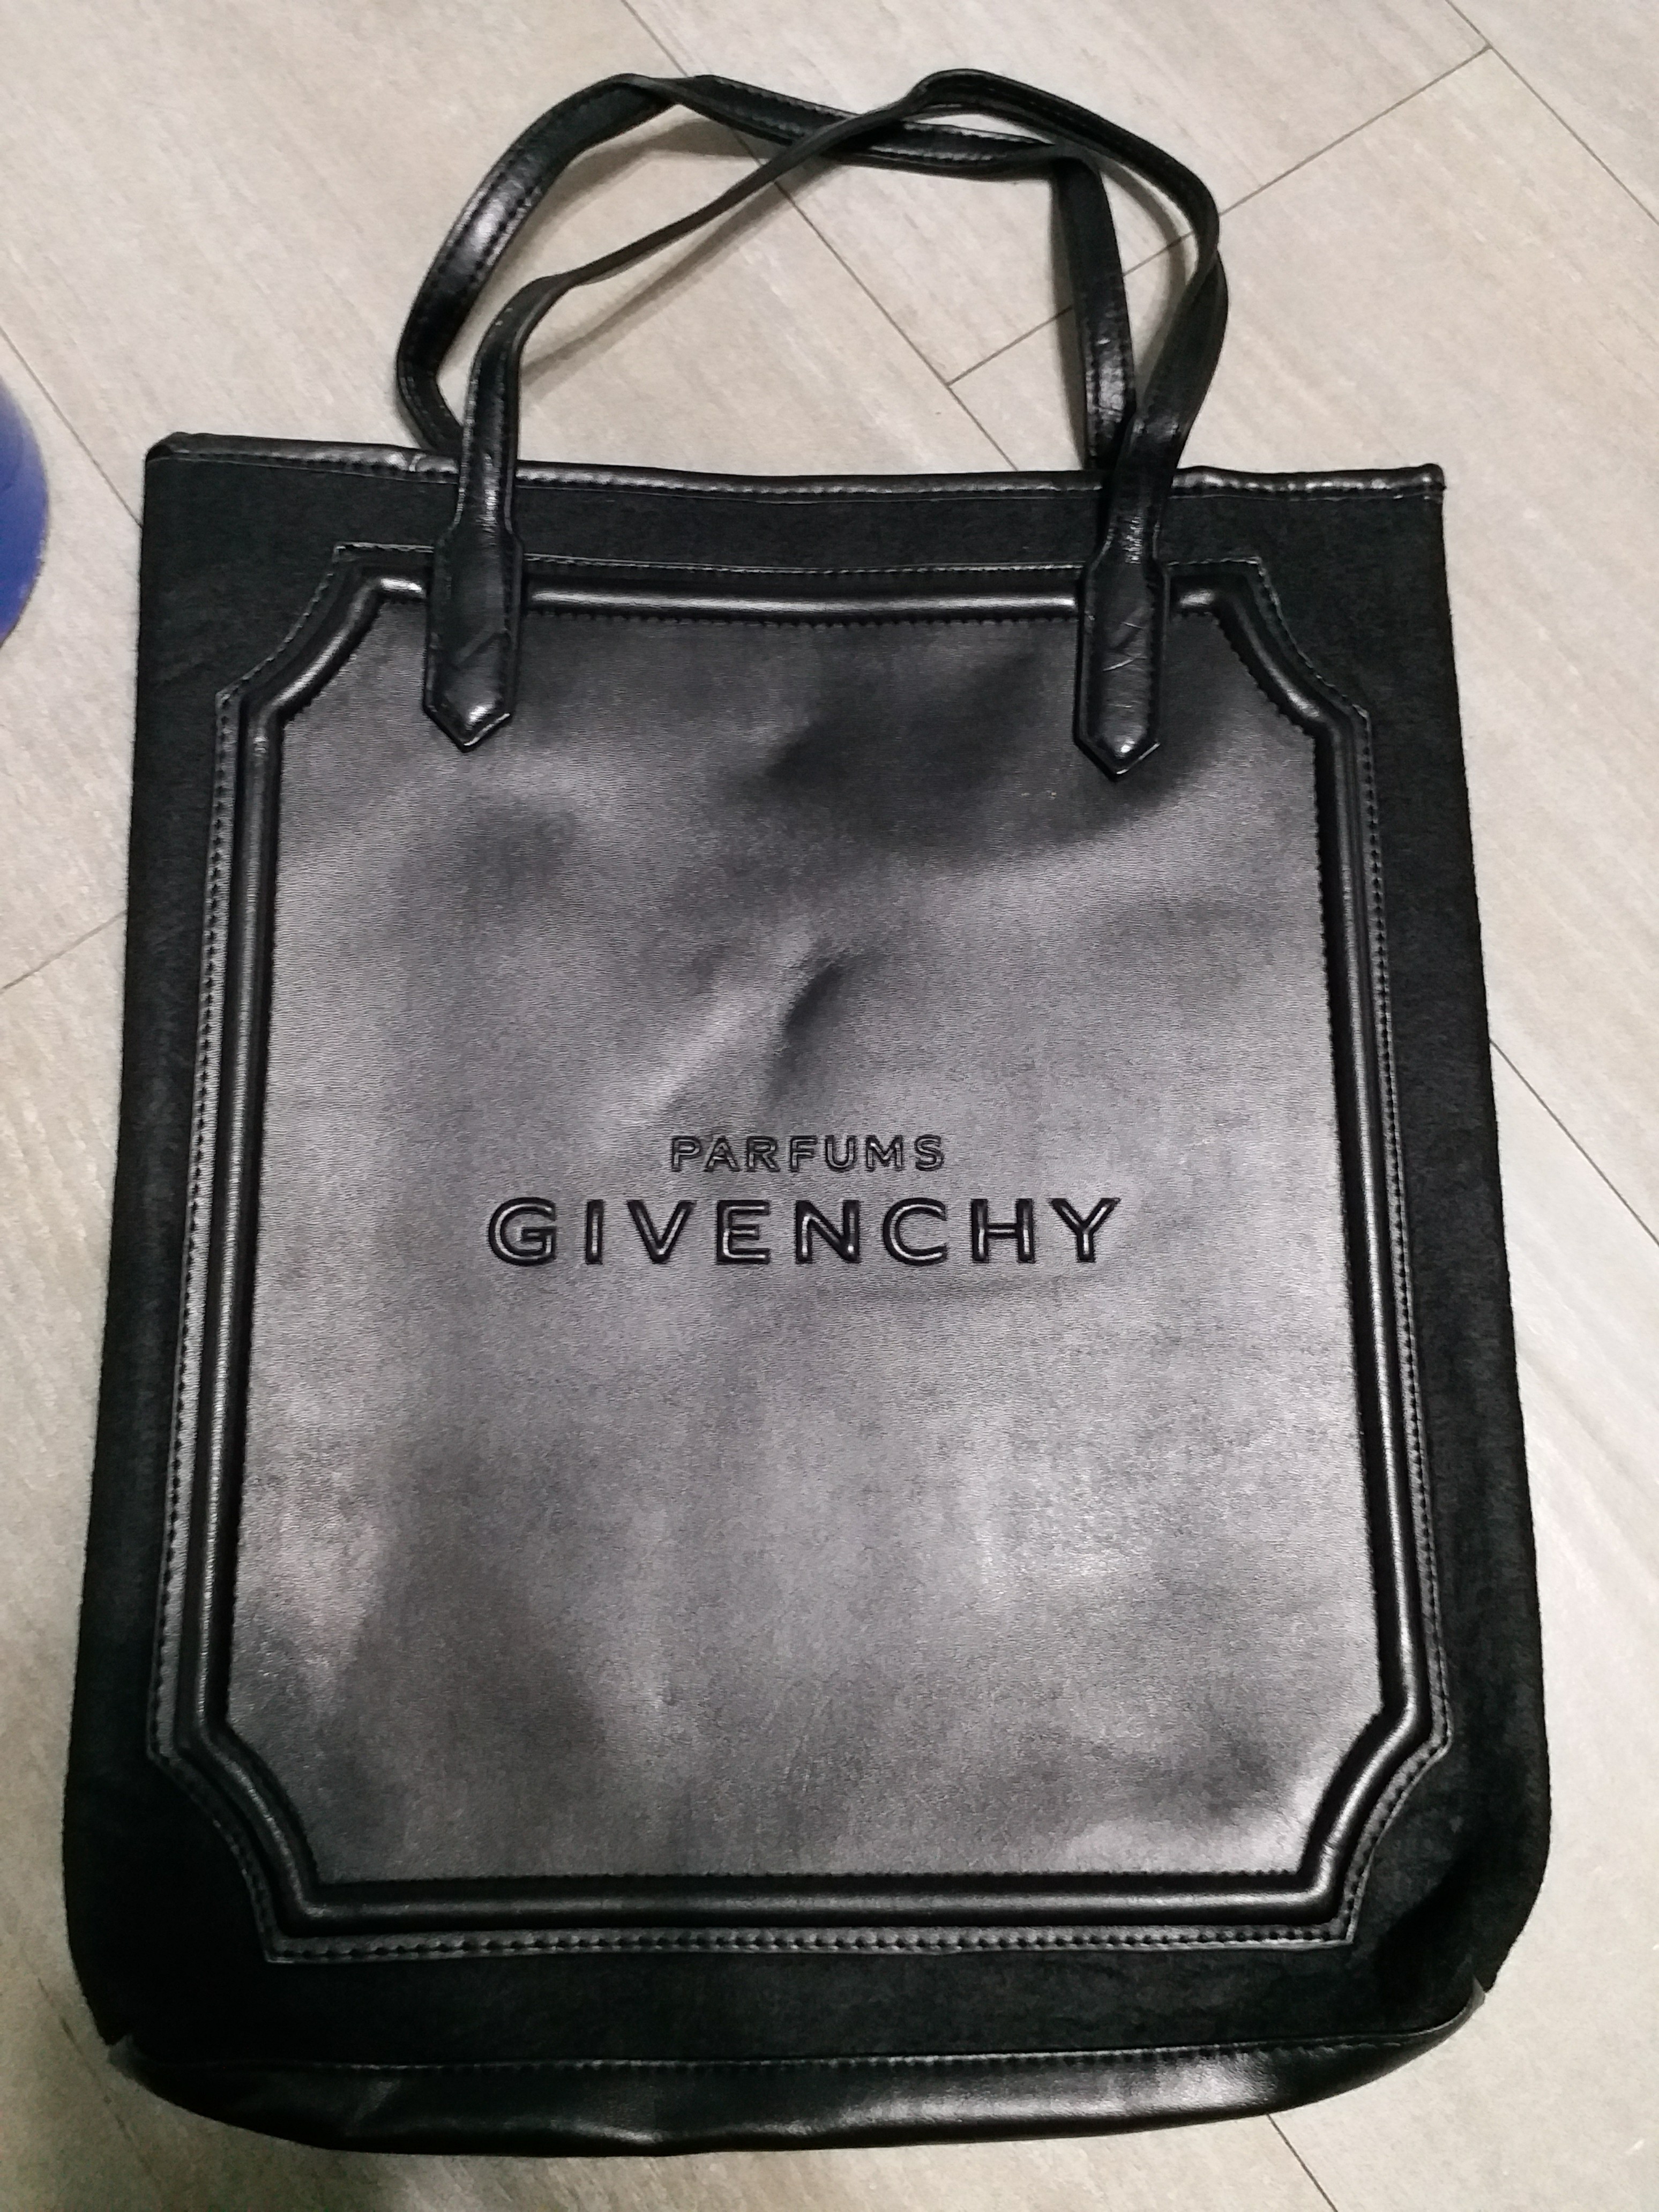 givenchy perfume gift bag